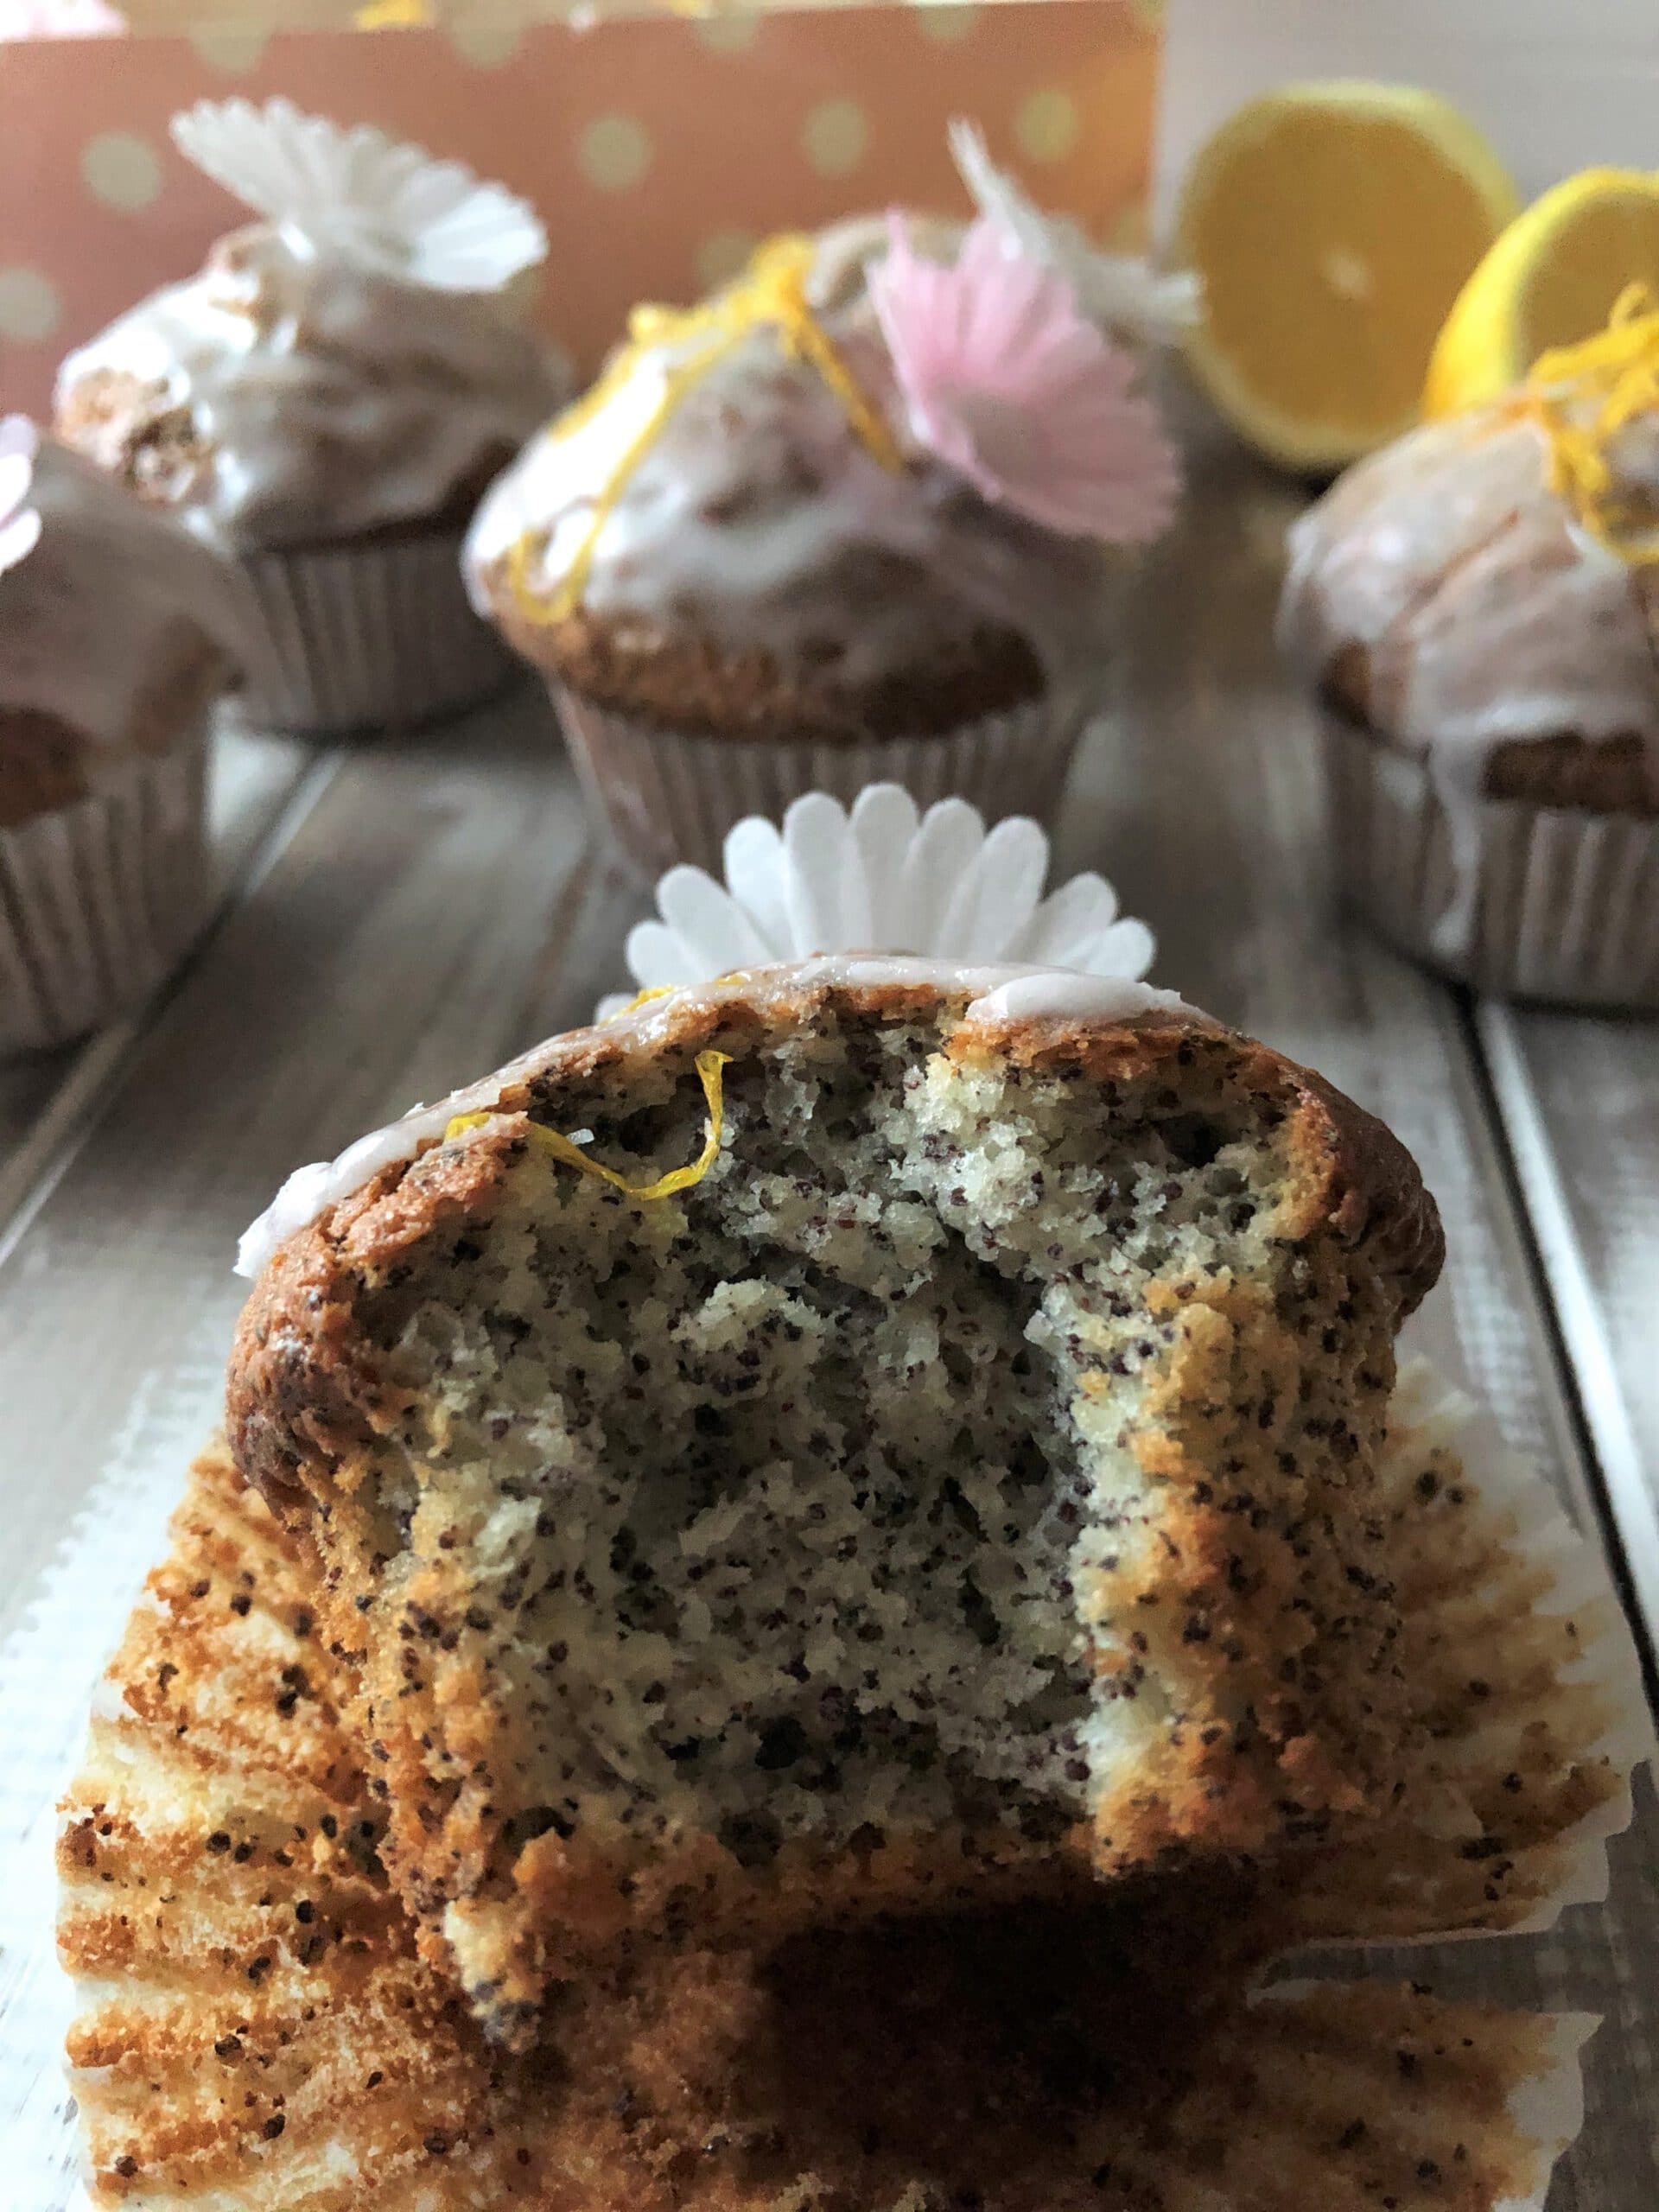 Sarahs Zitronen Mohn Muffins - Sparflämmchen Kuchen